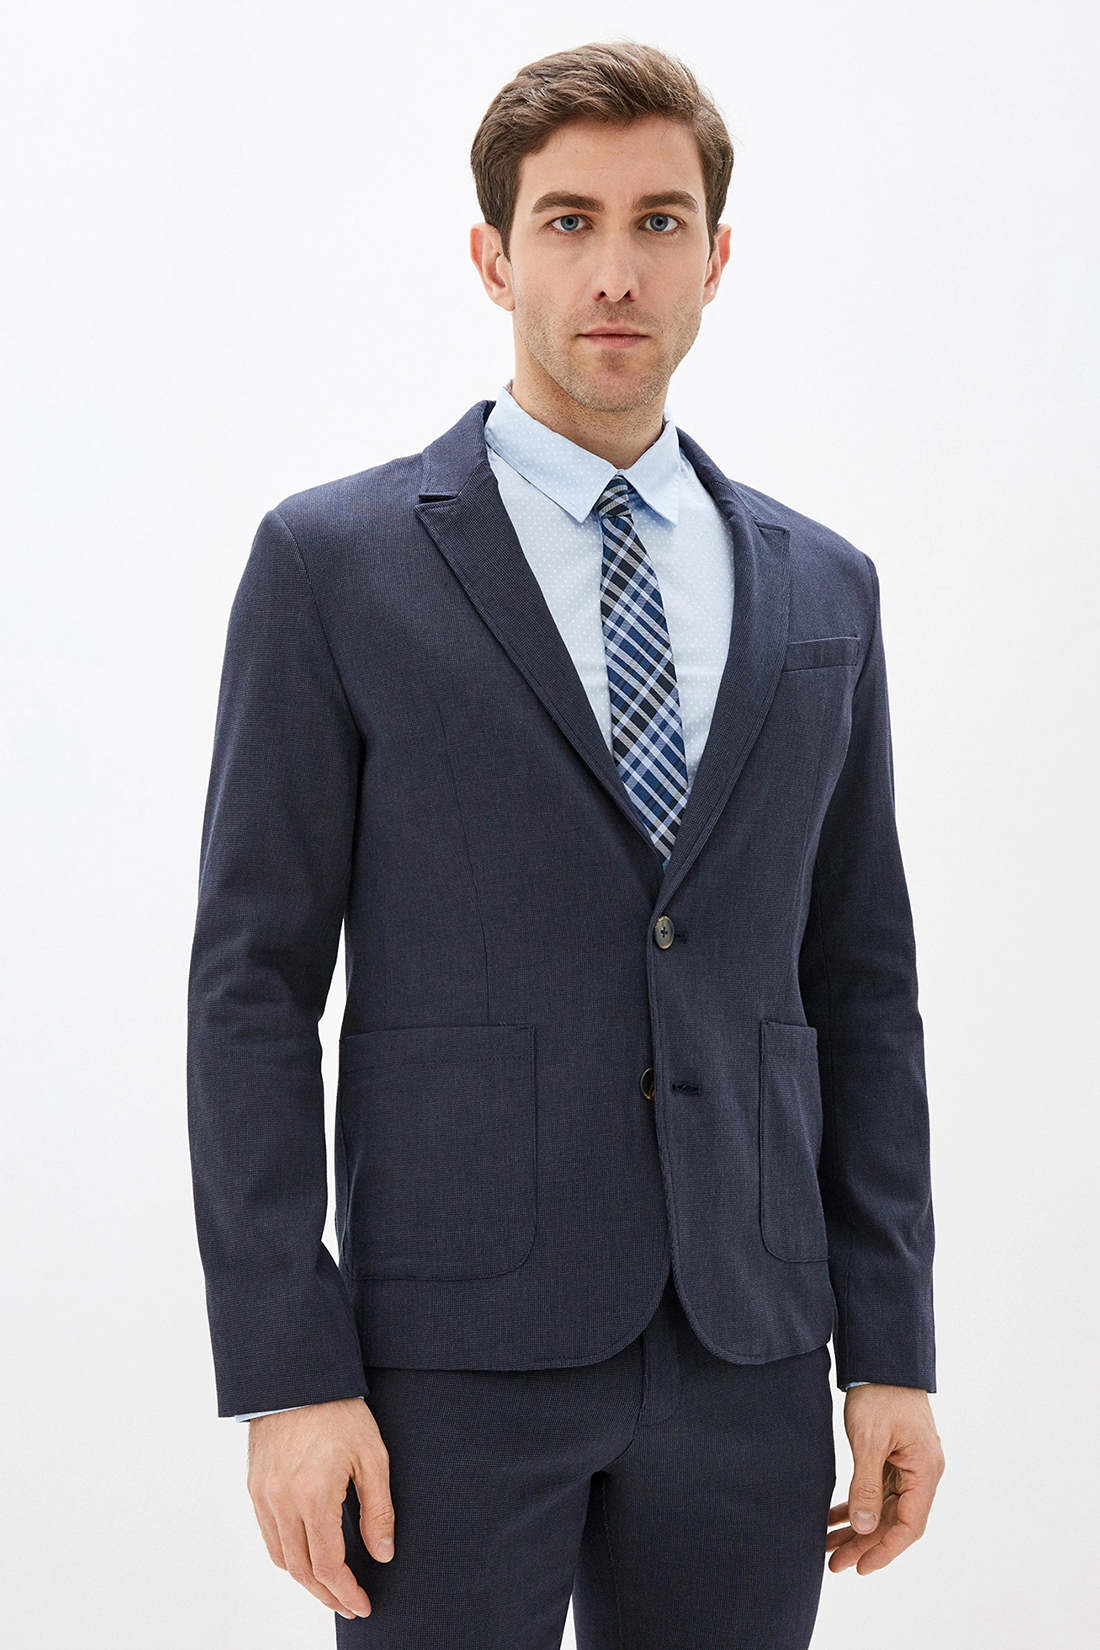 Повседневный пиджак (арт. baon B620002), размер S, цвет синий